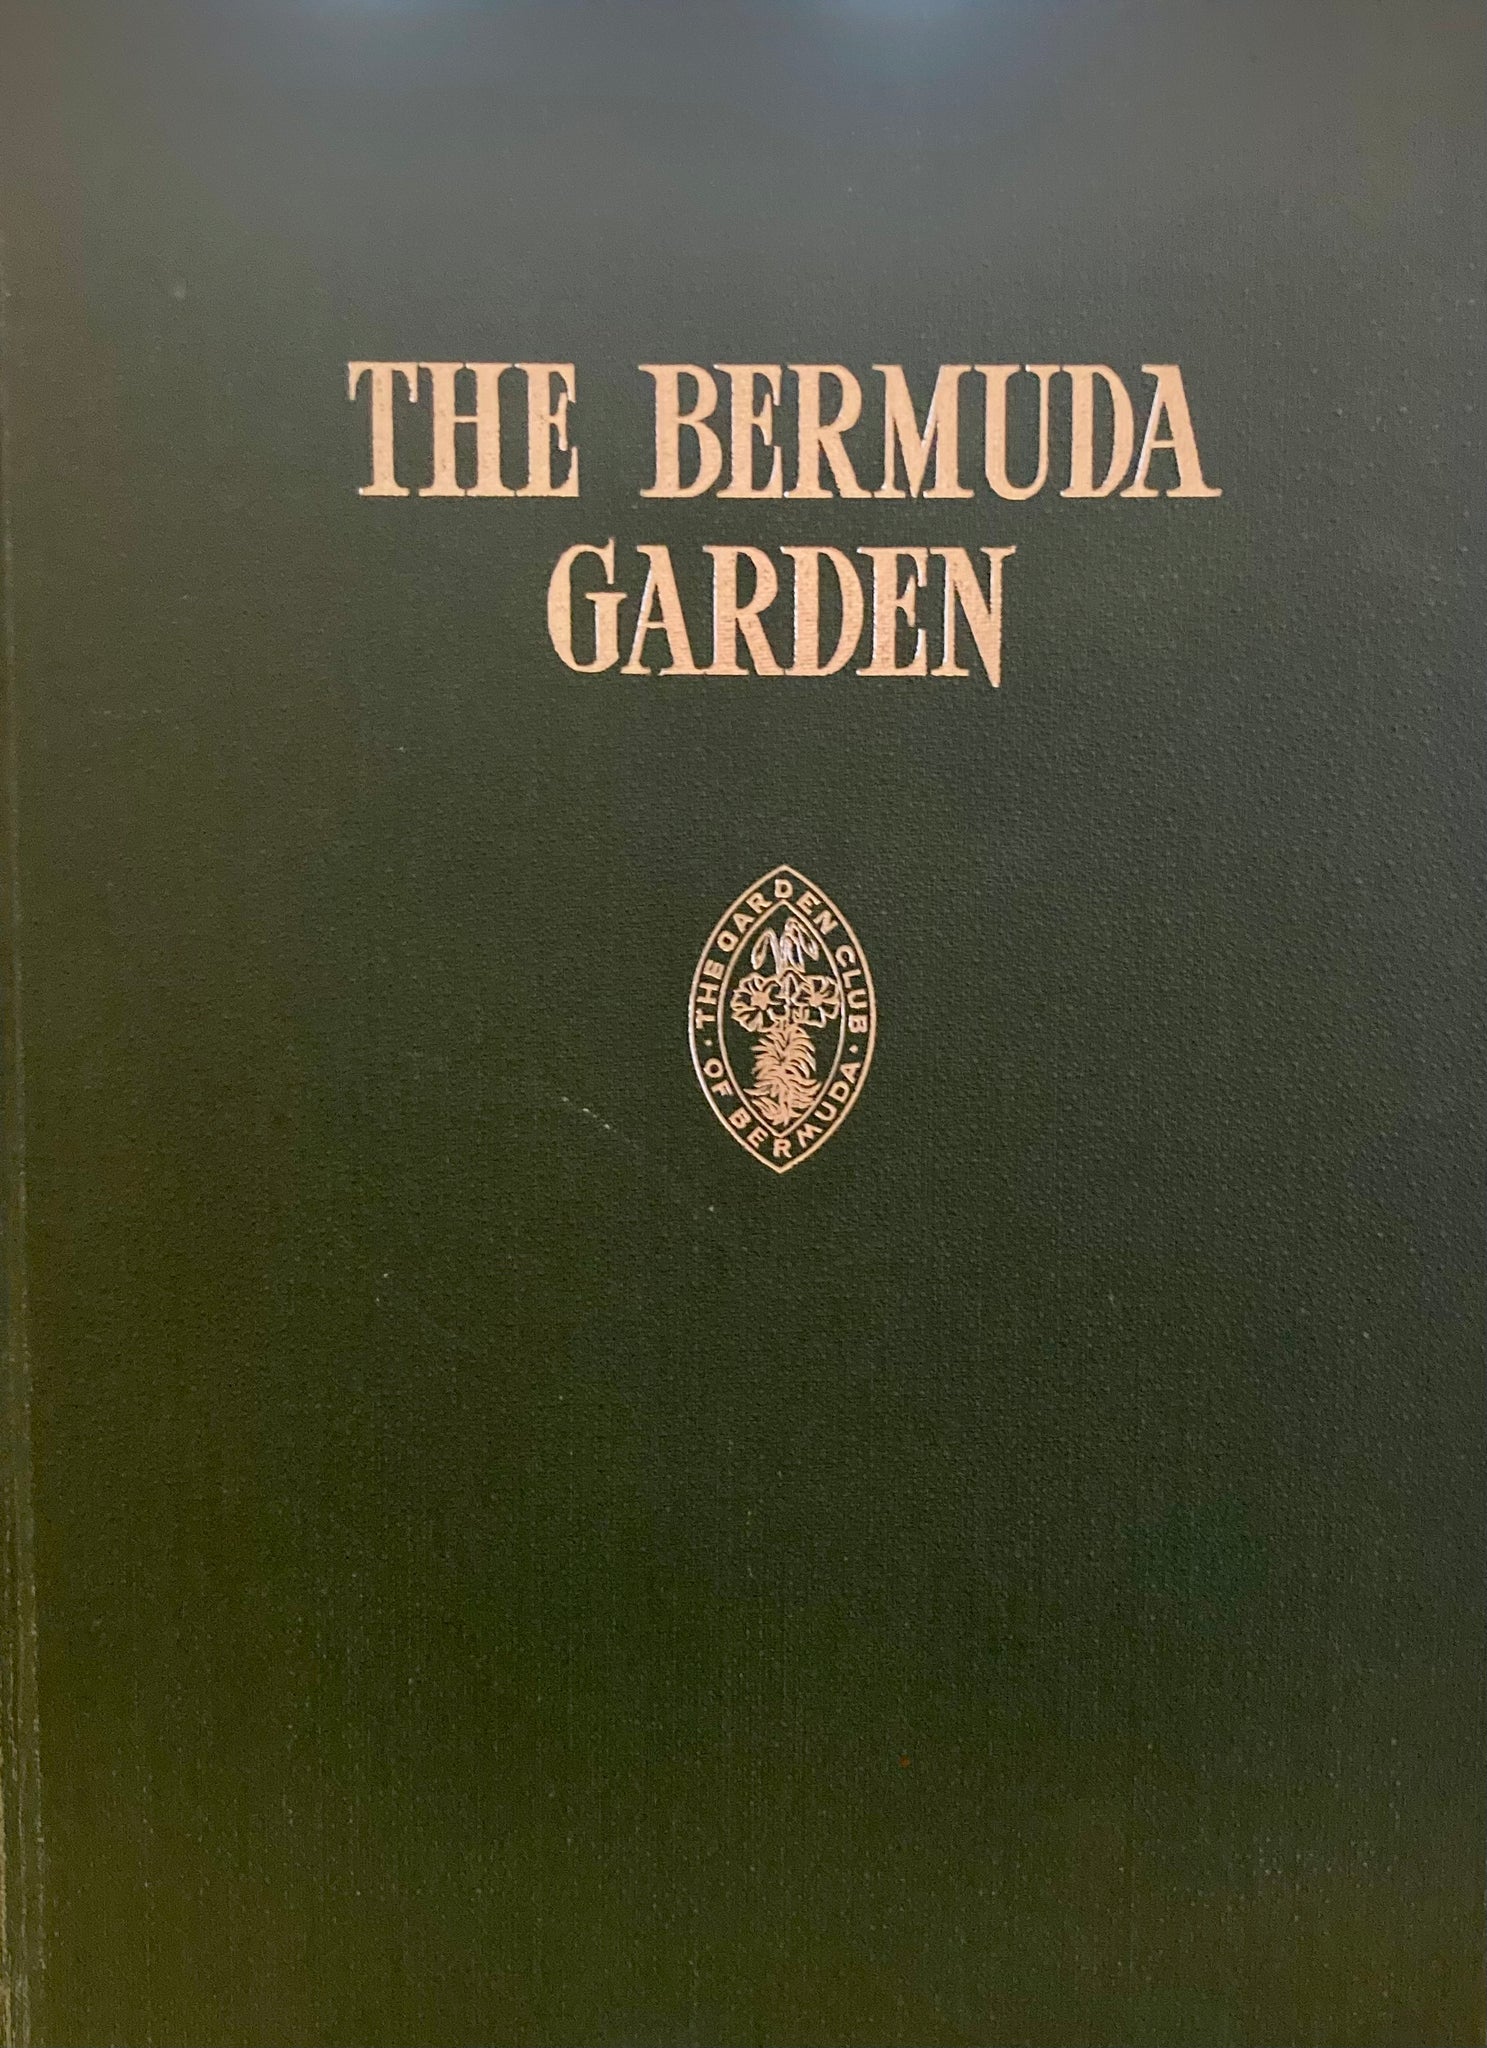 The Bermuda Garden